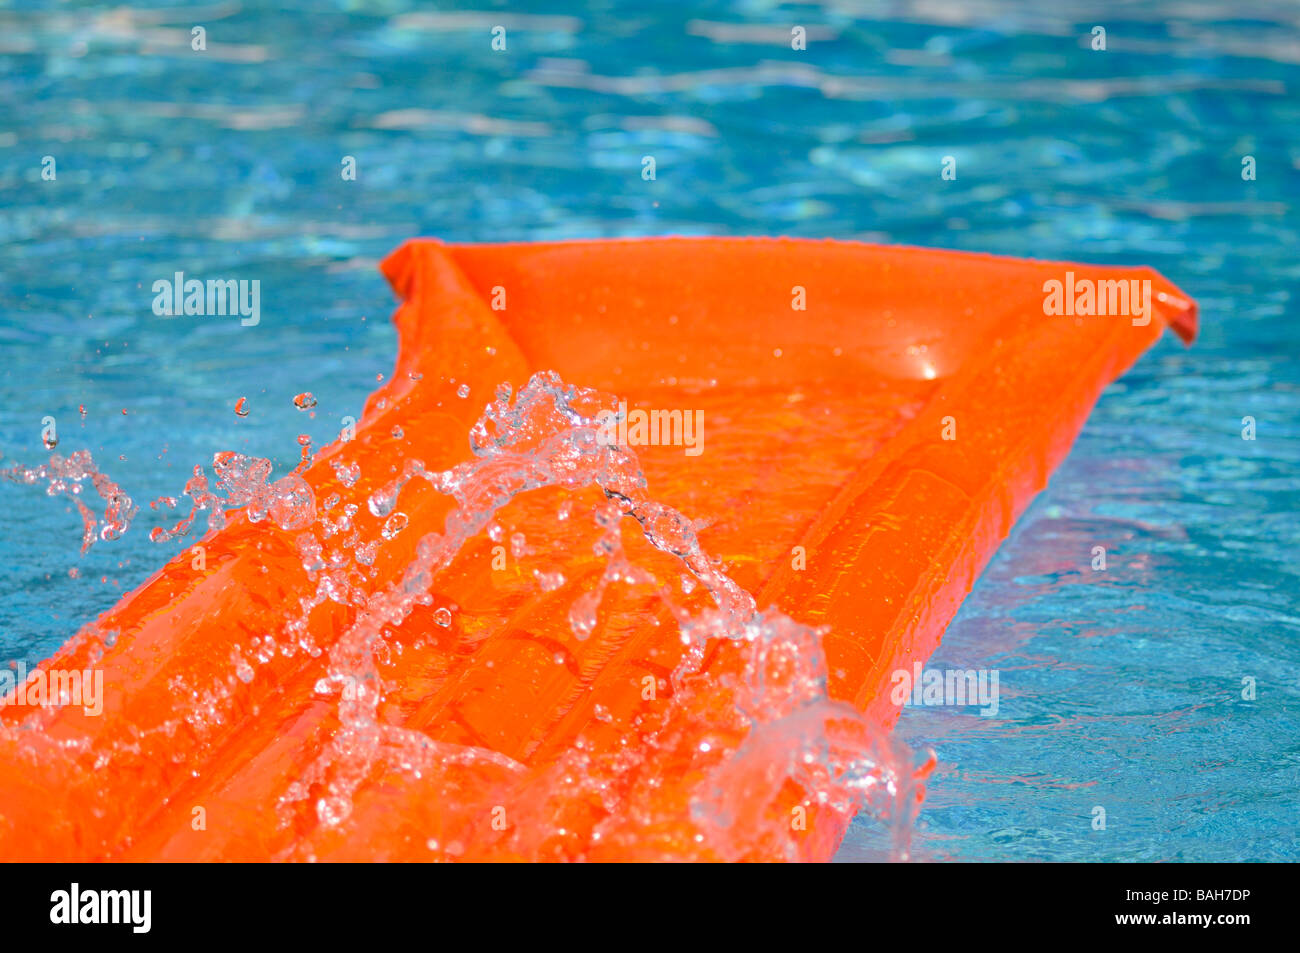 Éclaboussé de l'eau sur un lit d'air orange flottant dans une piscine. Banque D'Images